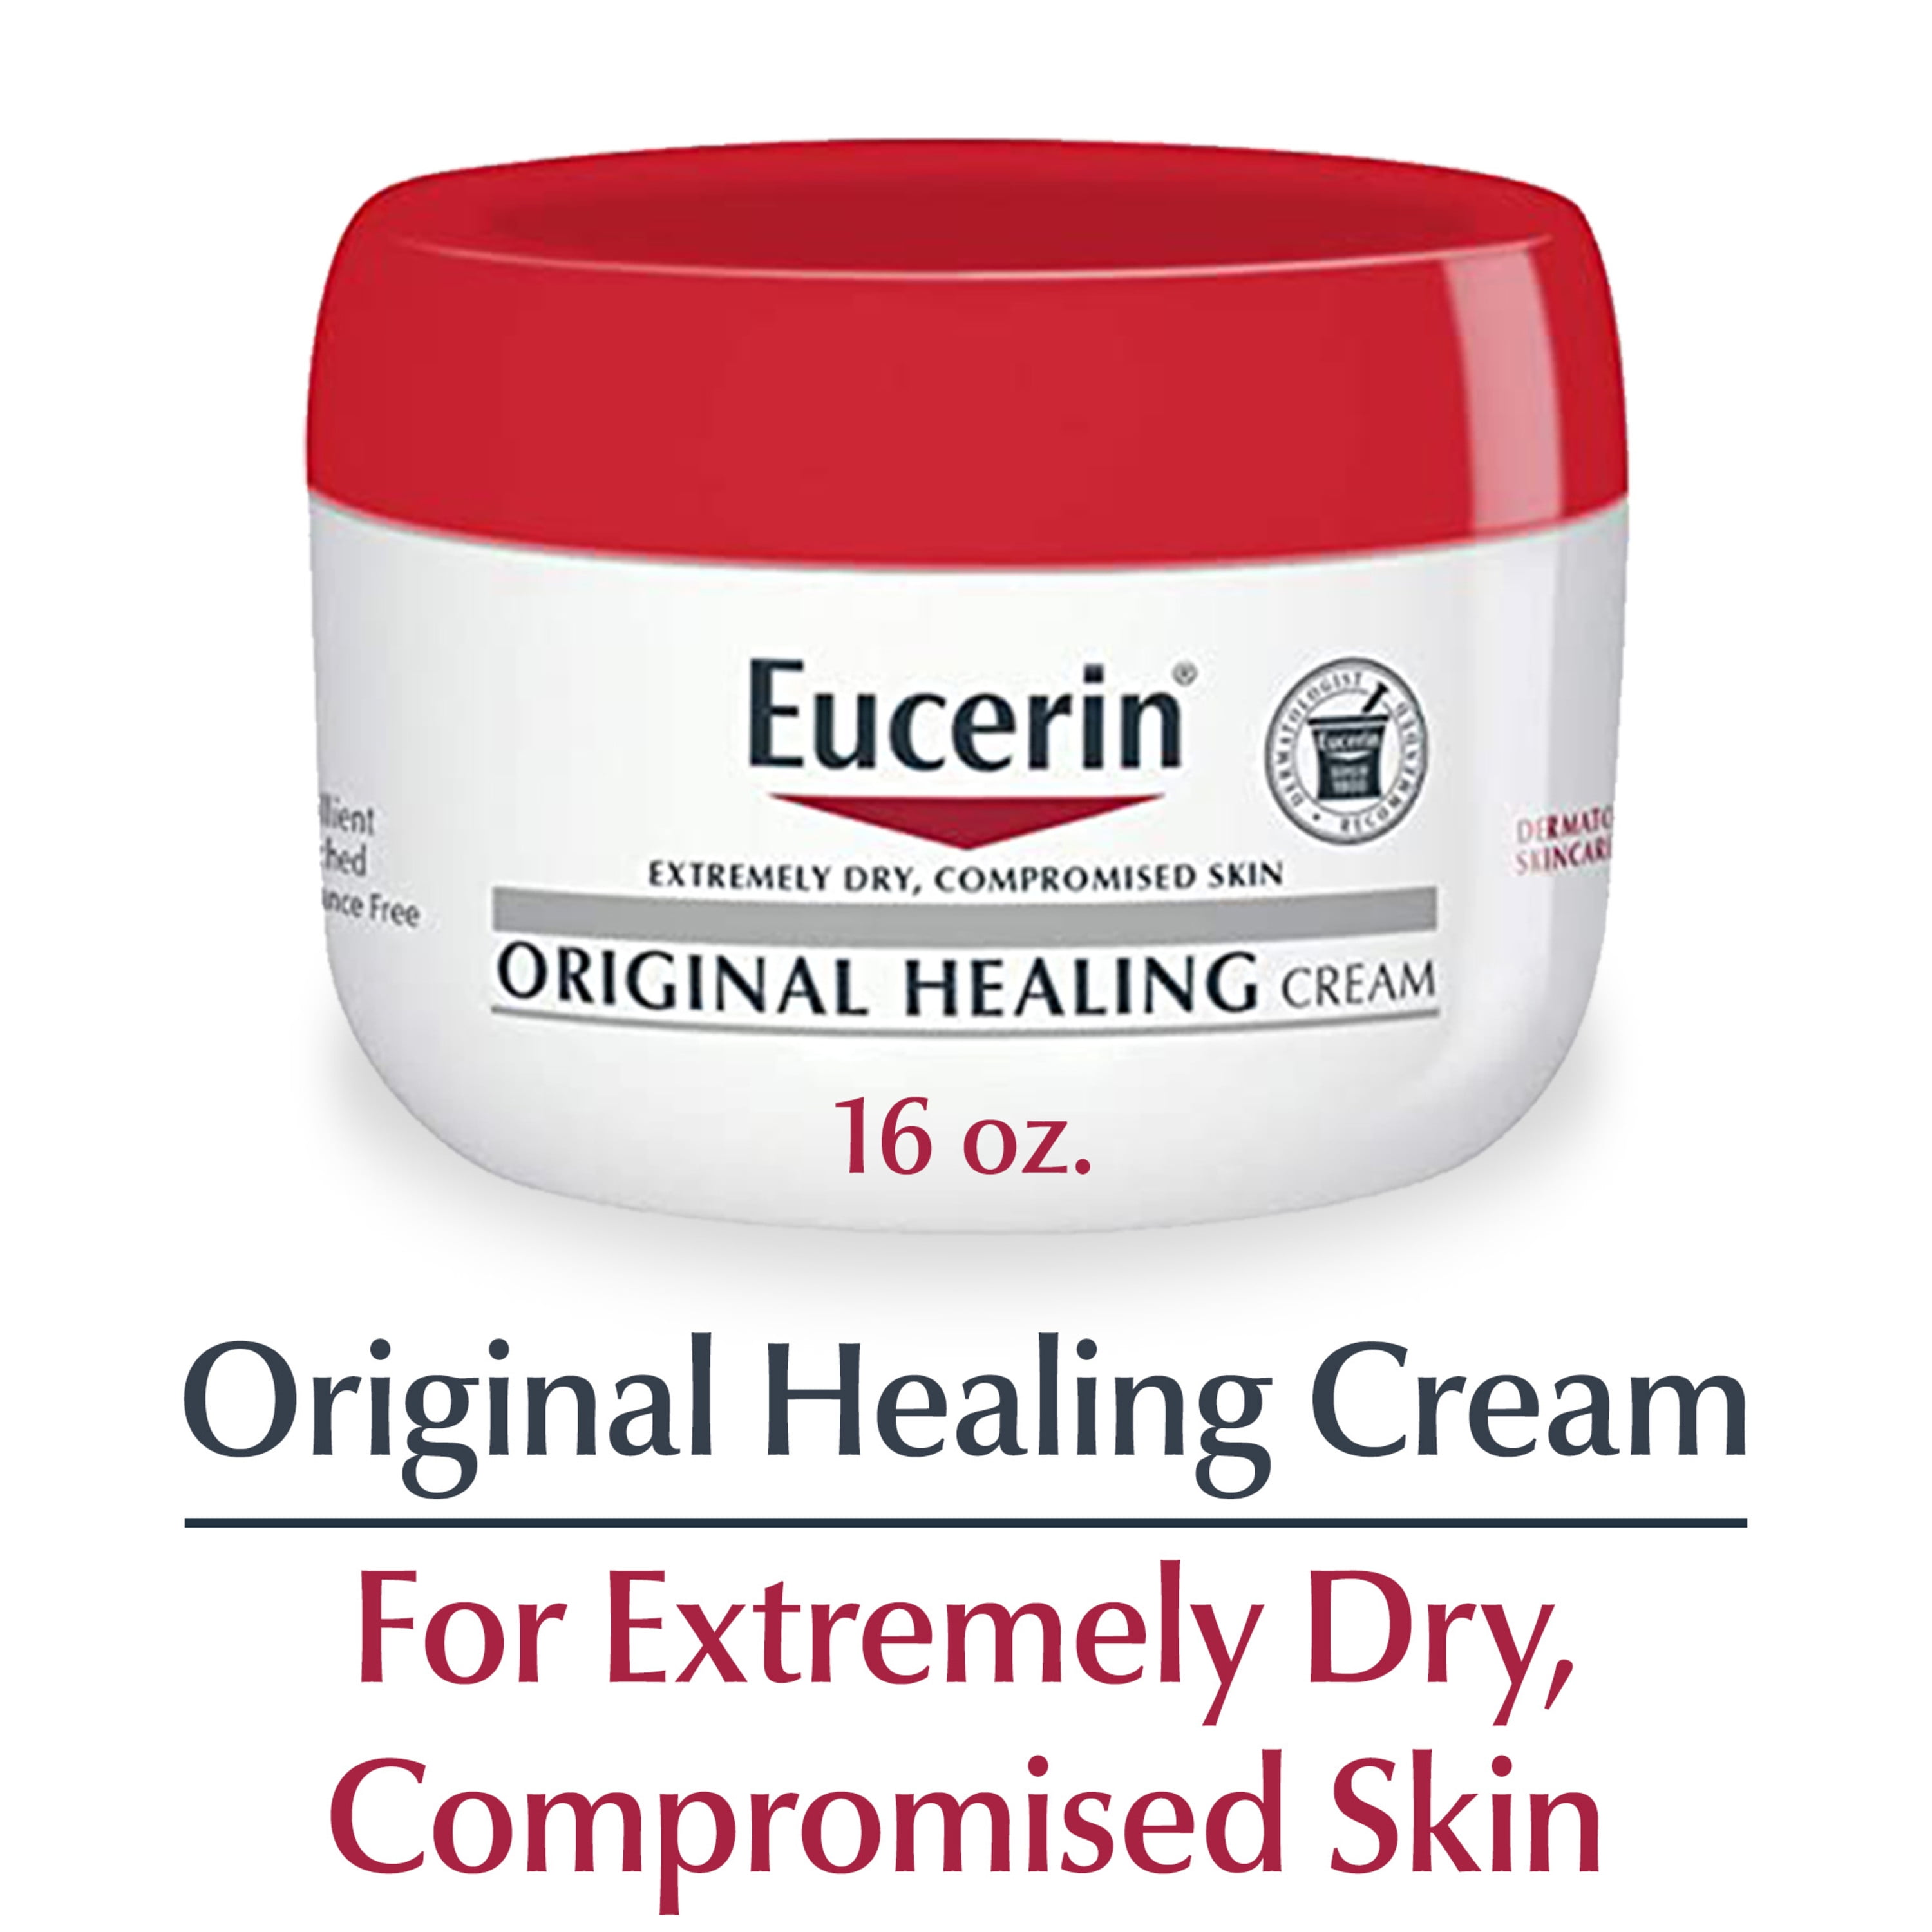 Eucerin Original Healing Cream, Body Cream for Dry Skin, 16 Oz Jar